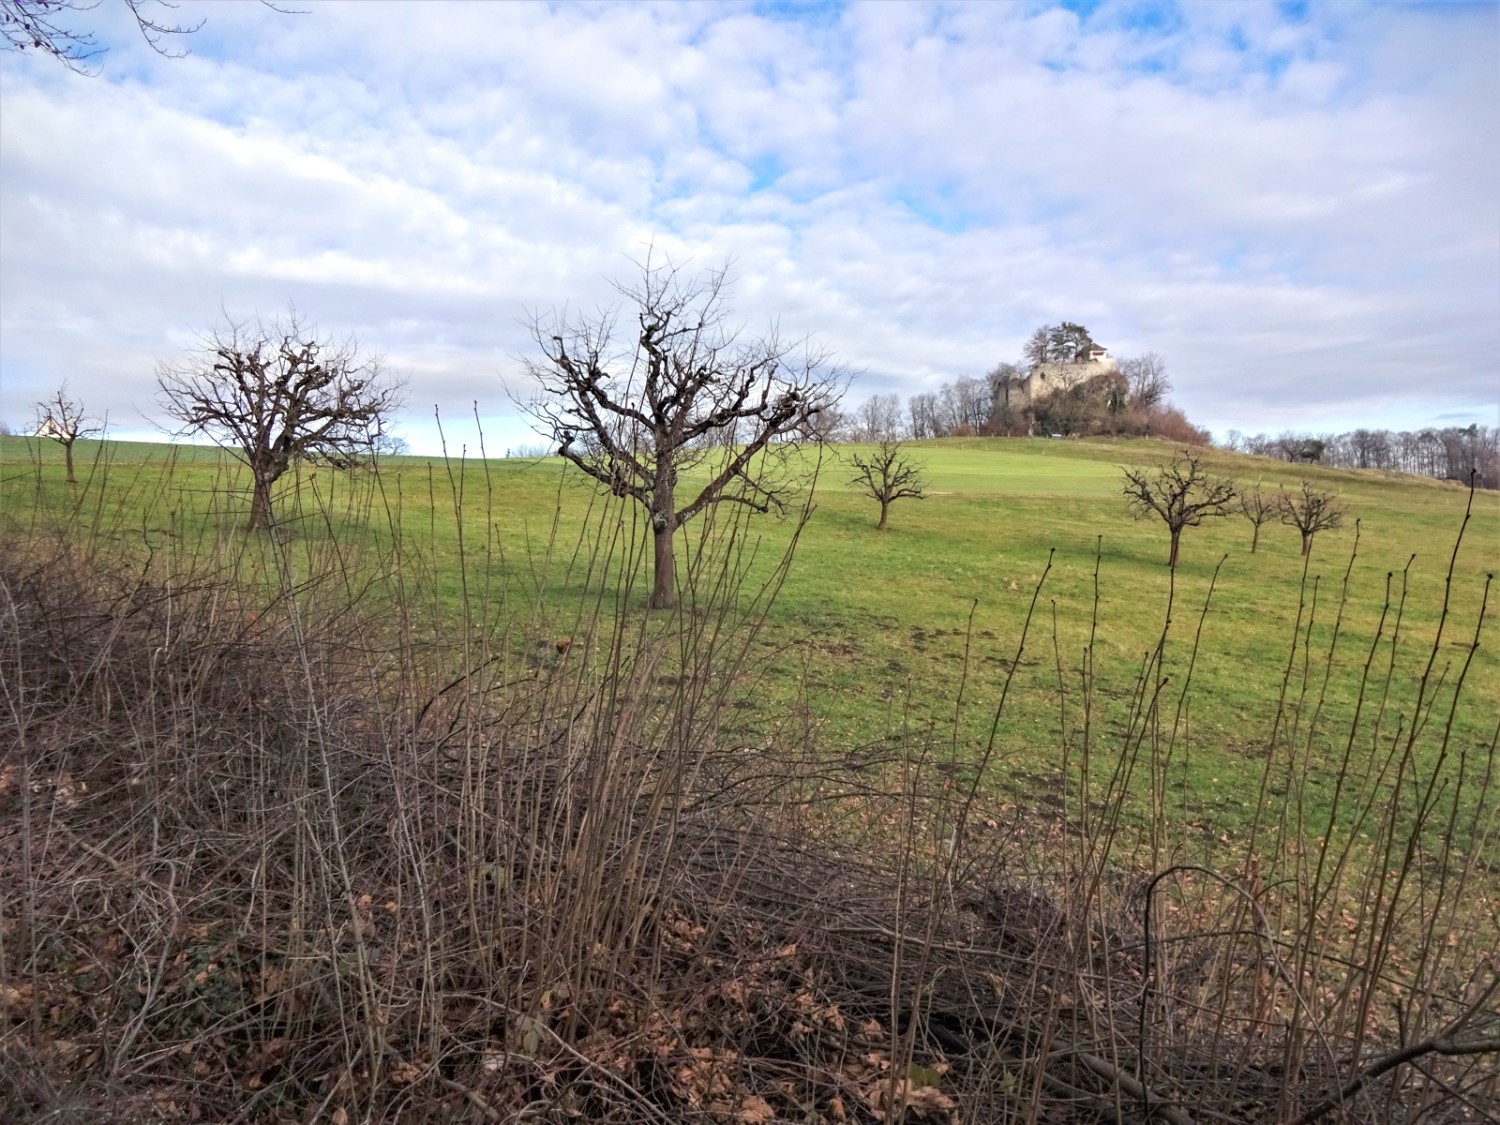 Die Ruinen des ehemaligen Schlosses Neu Schauenburg thronen auf dem Hügel. Bild: Miroslaw Halaba